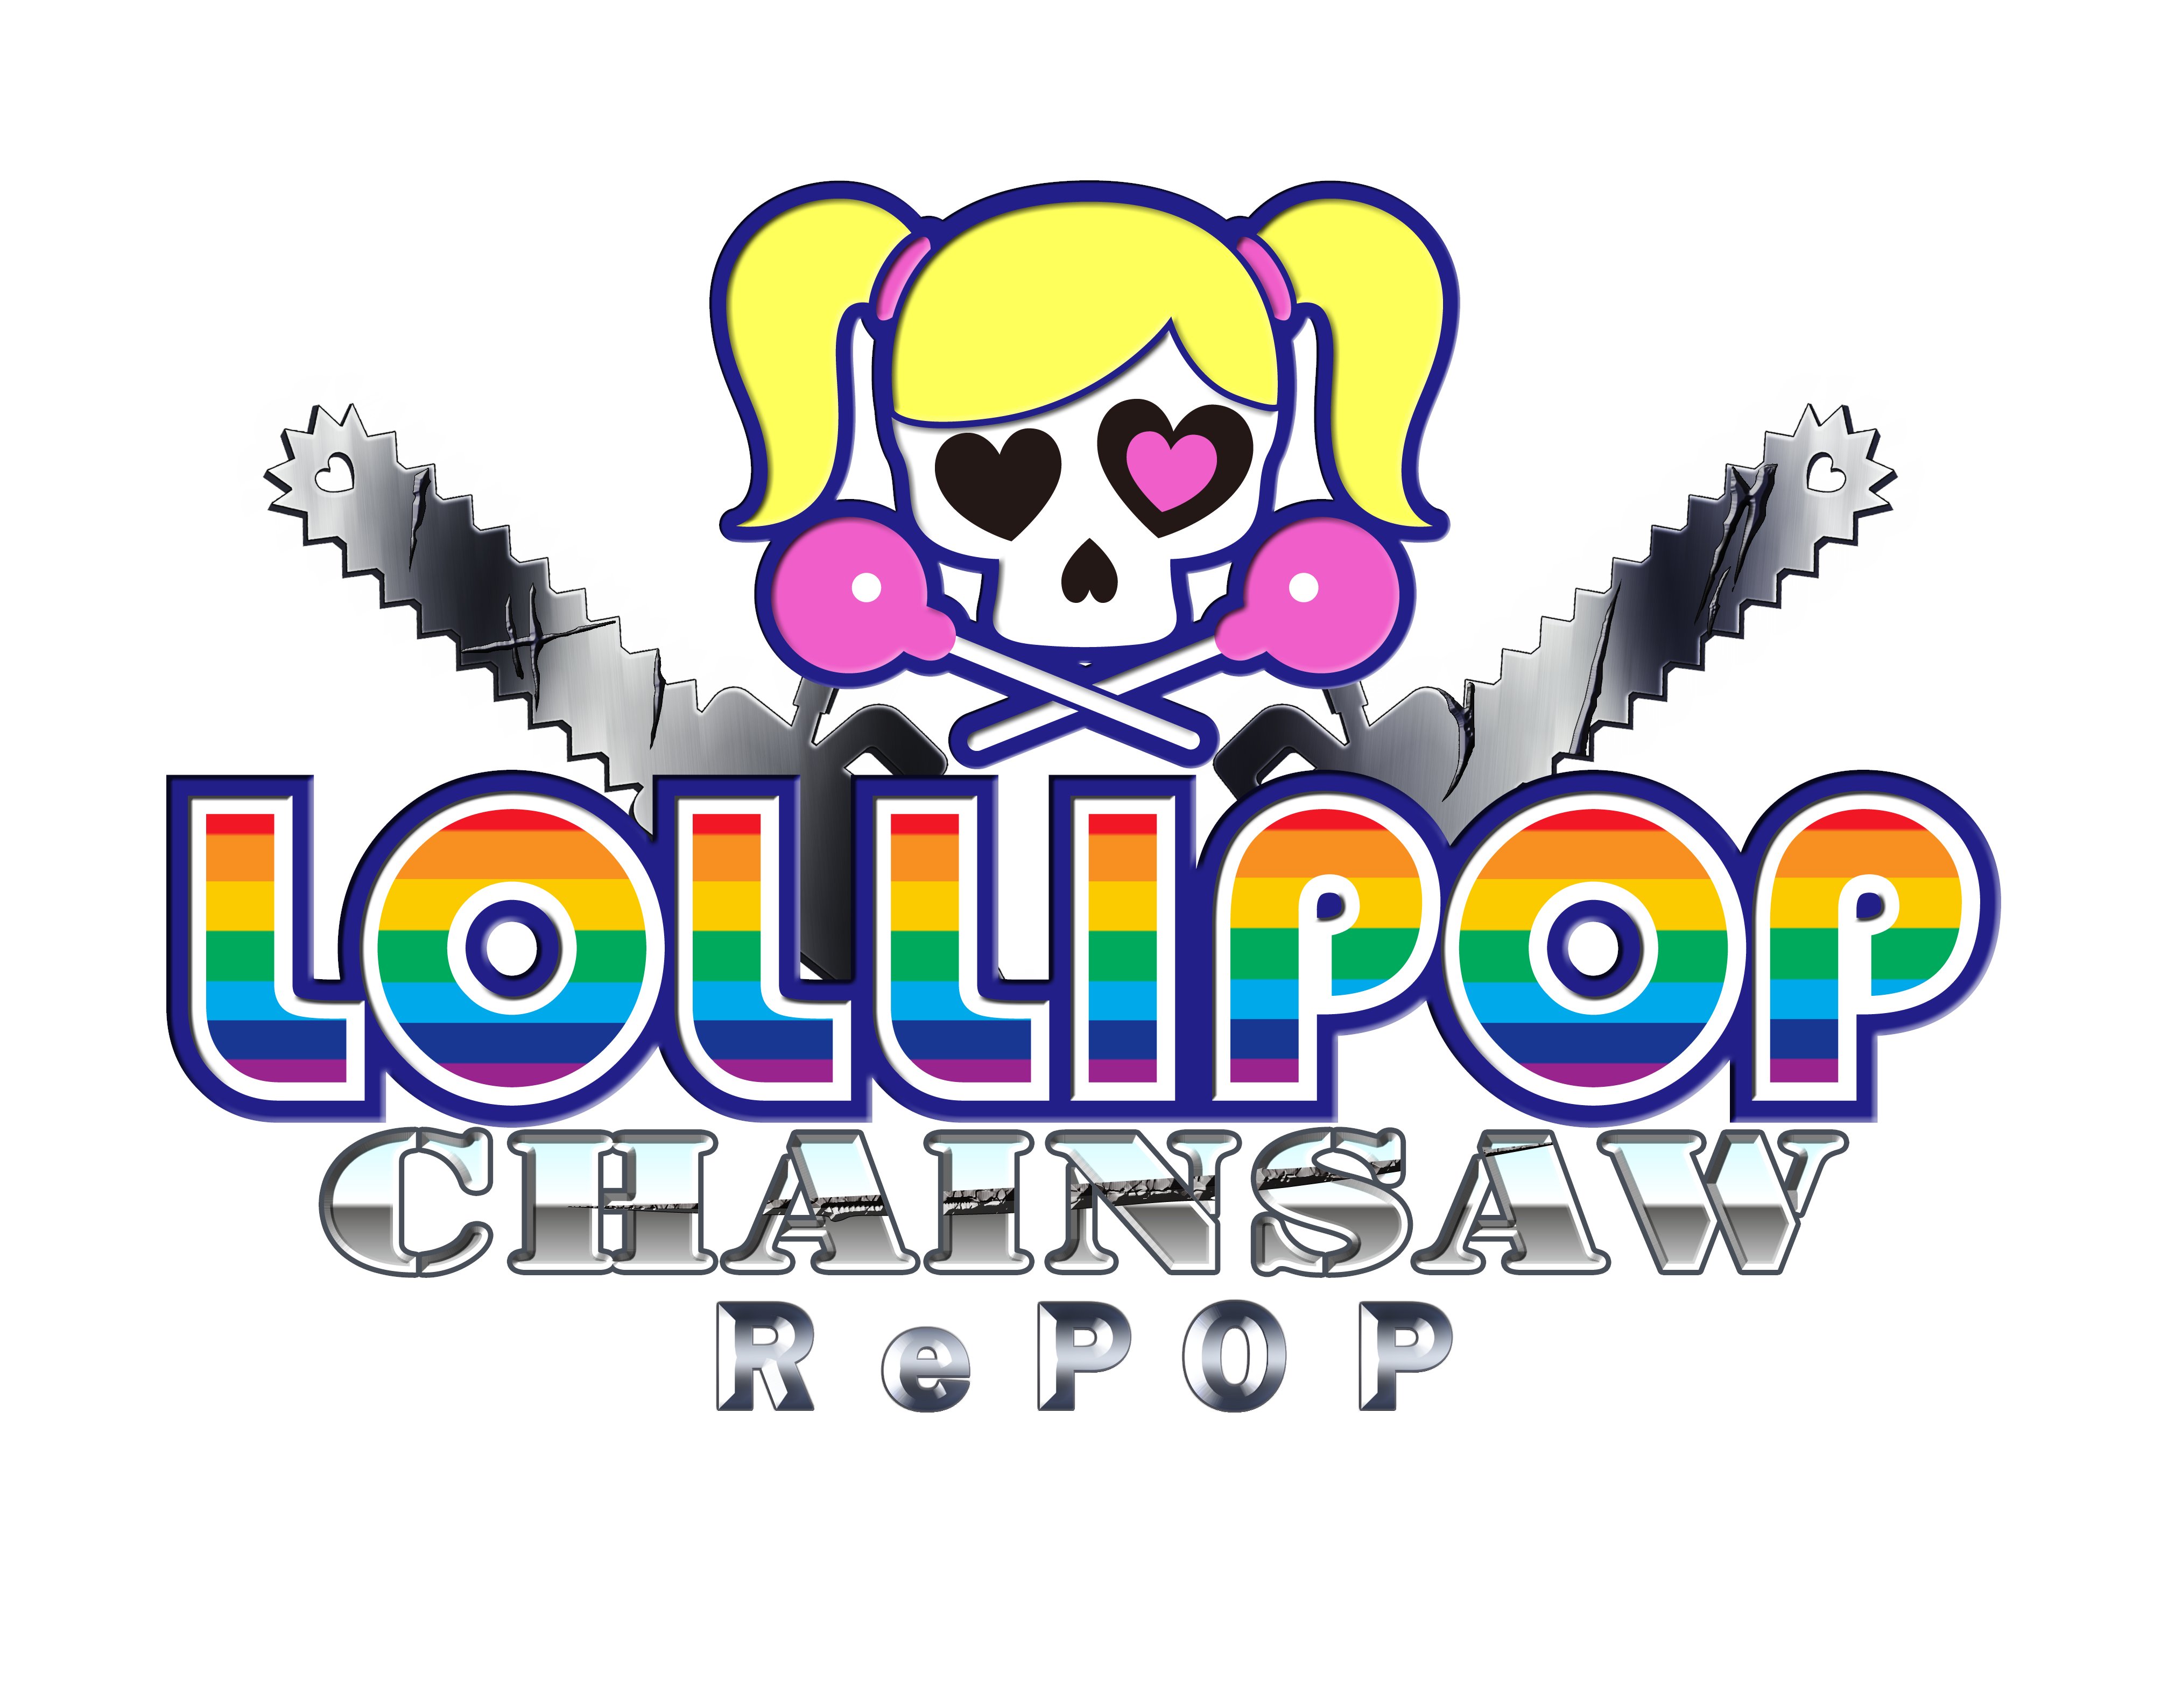 Lollipop Chainsaw